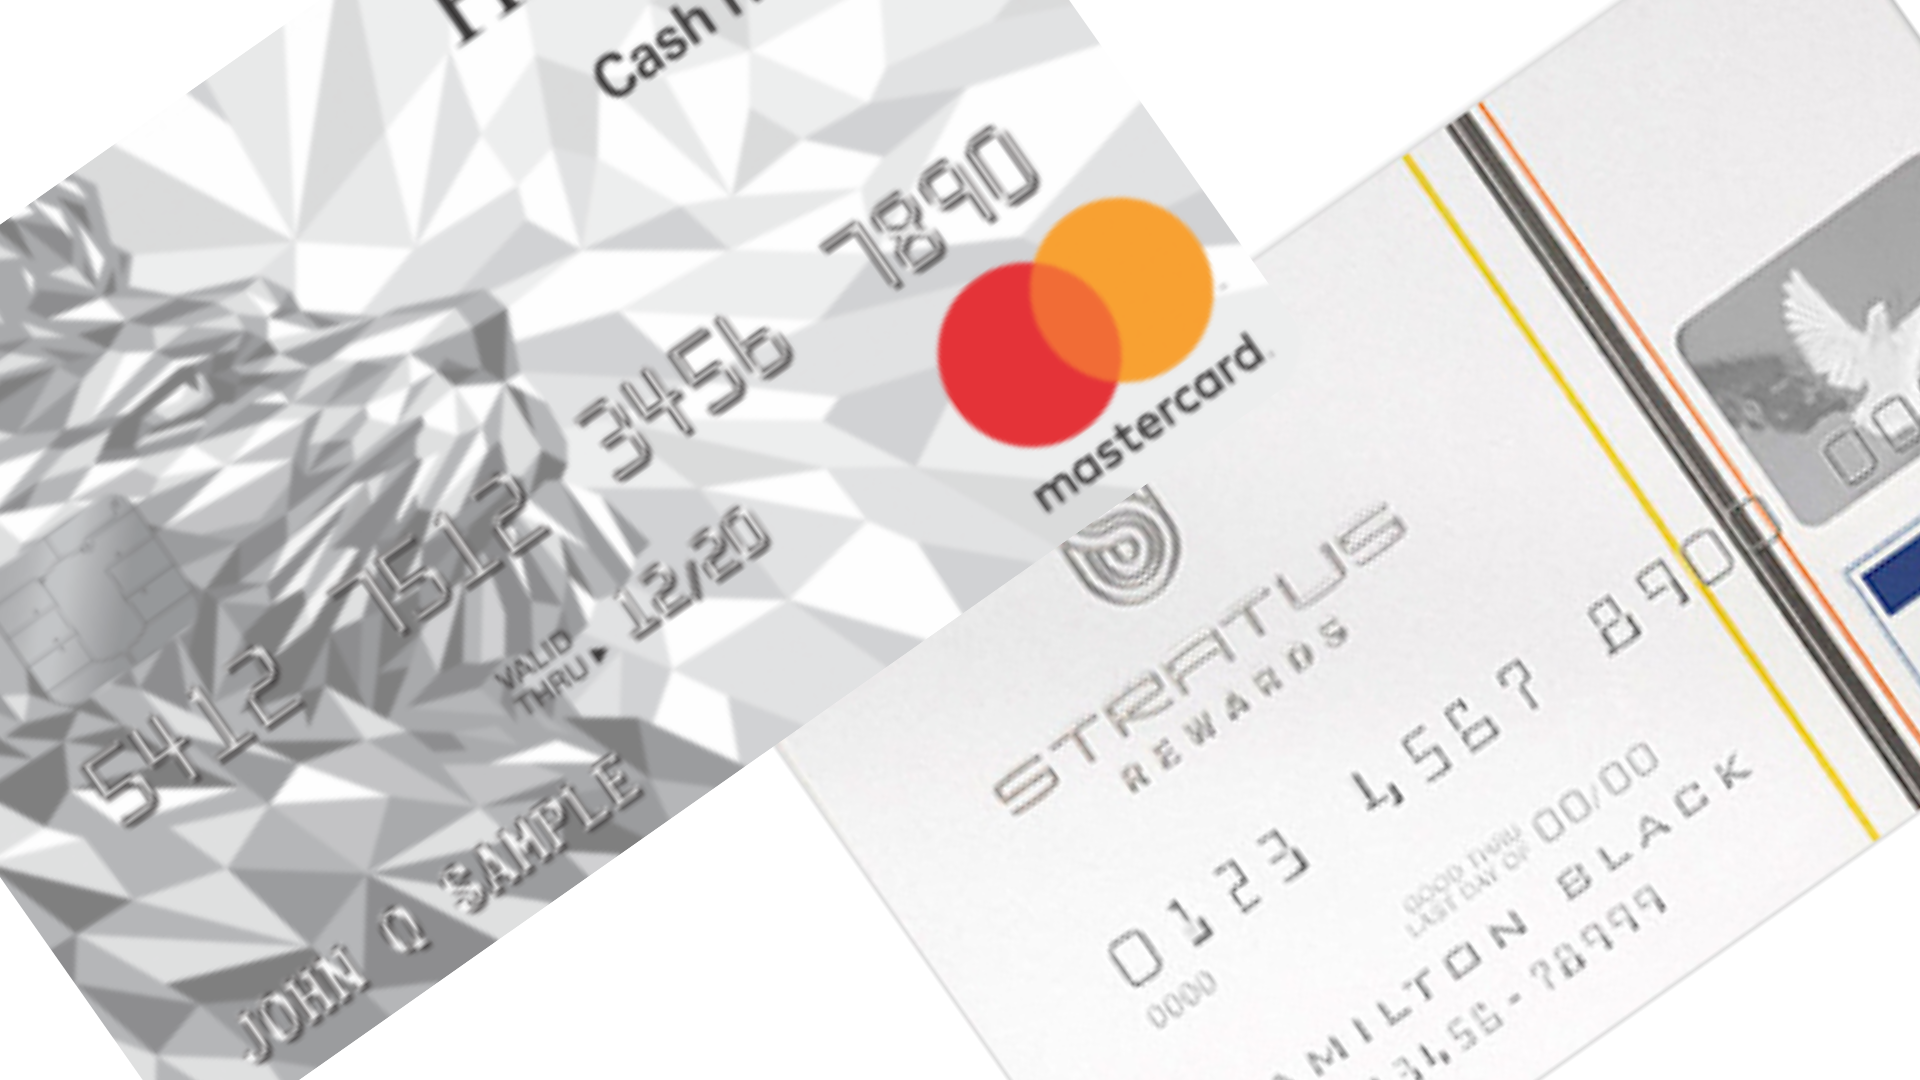 Comparação entre o cartão Stratus Rewards Visa White e cartão HSBC Cash Rewards. Fonte: HSBC.